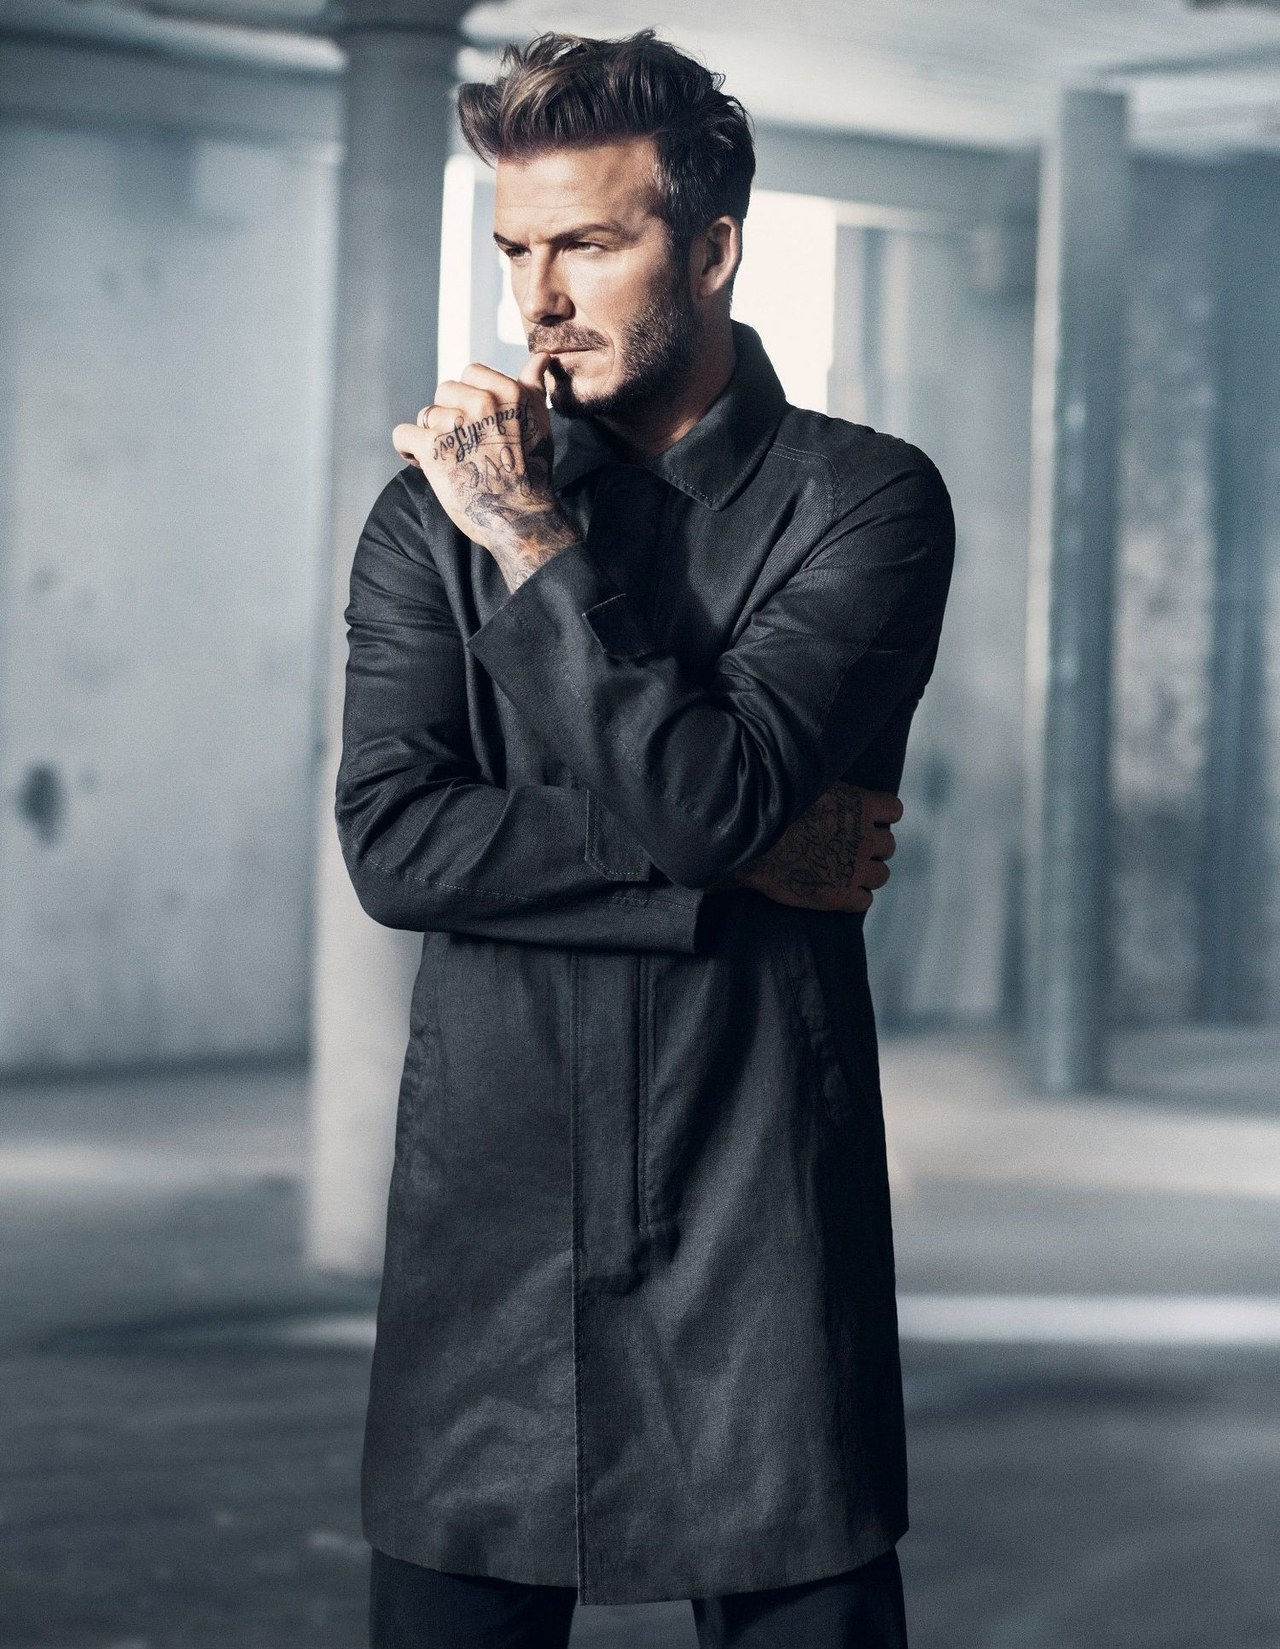 ديفيد beckham HM campaign 2015 black jacket